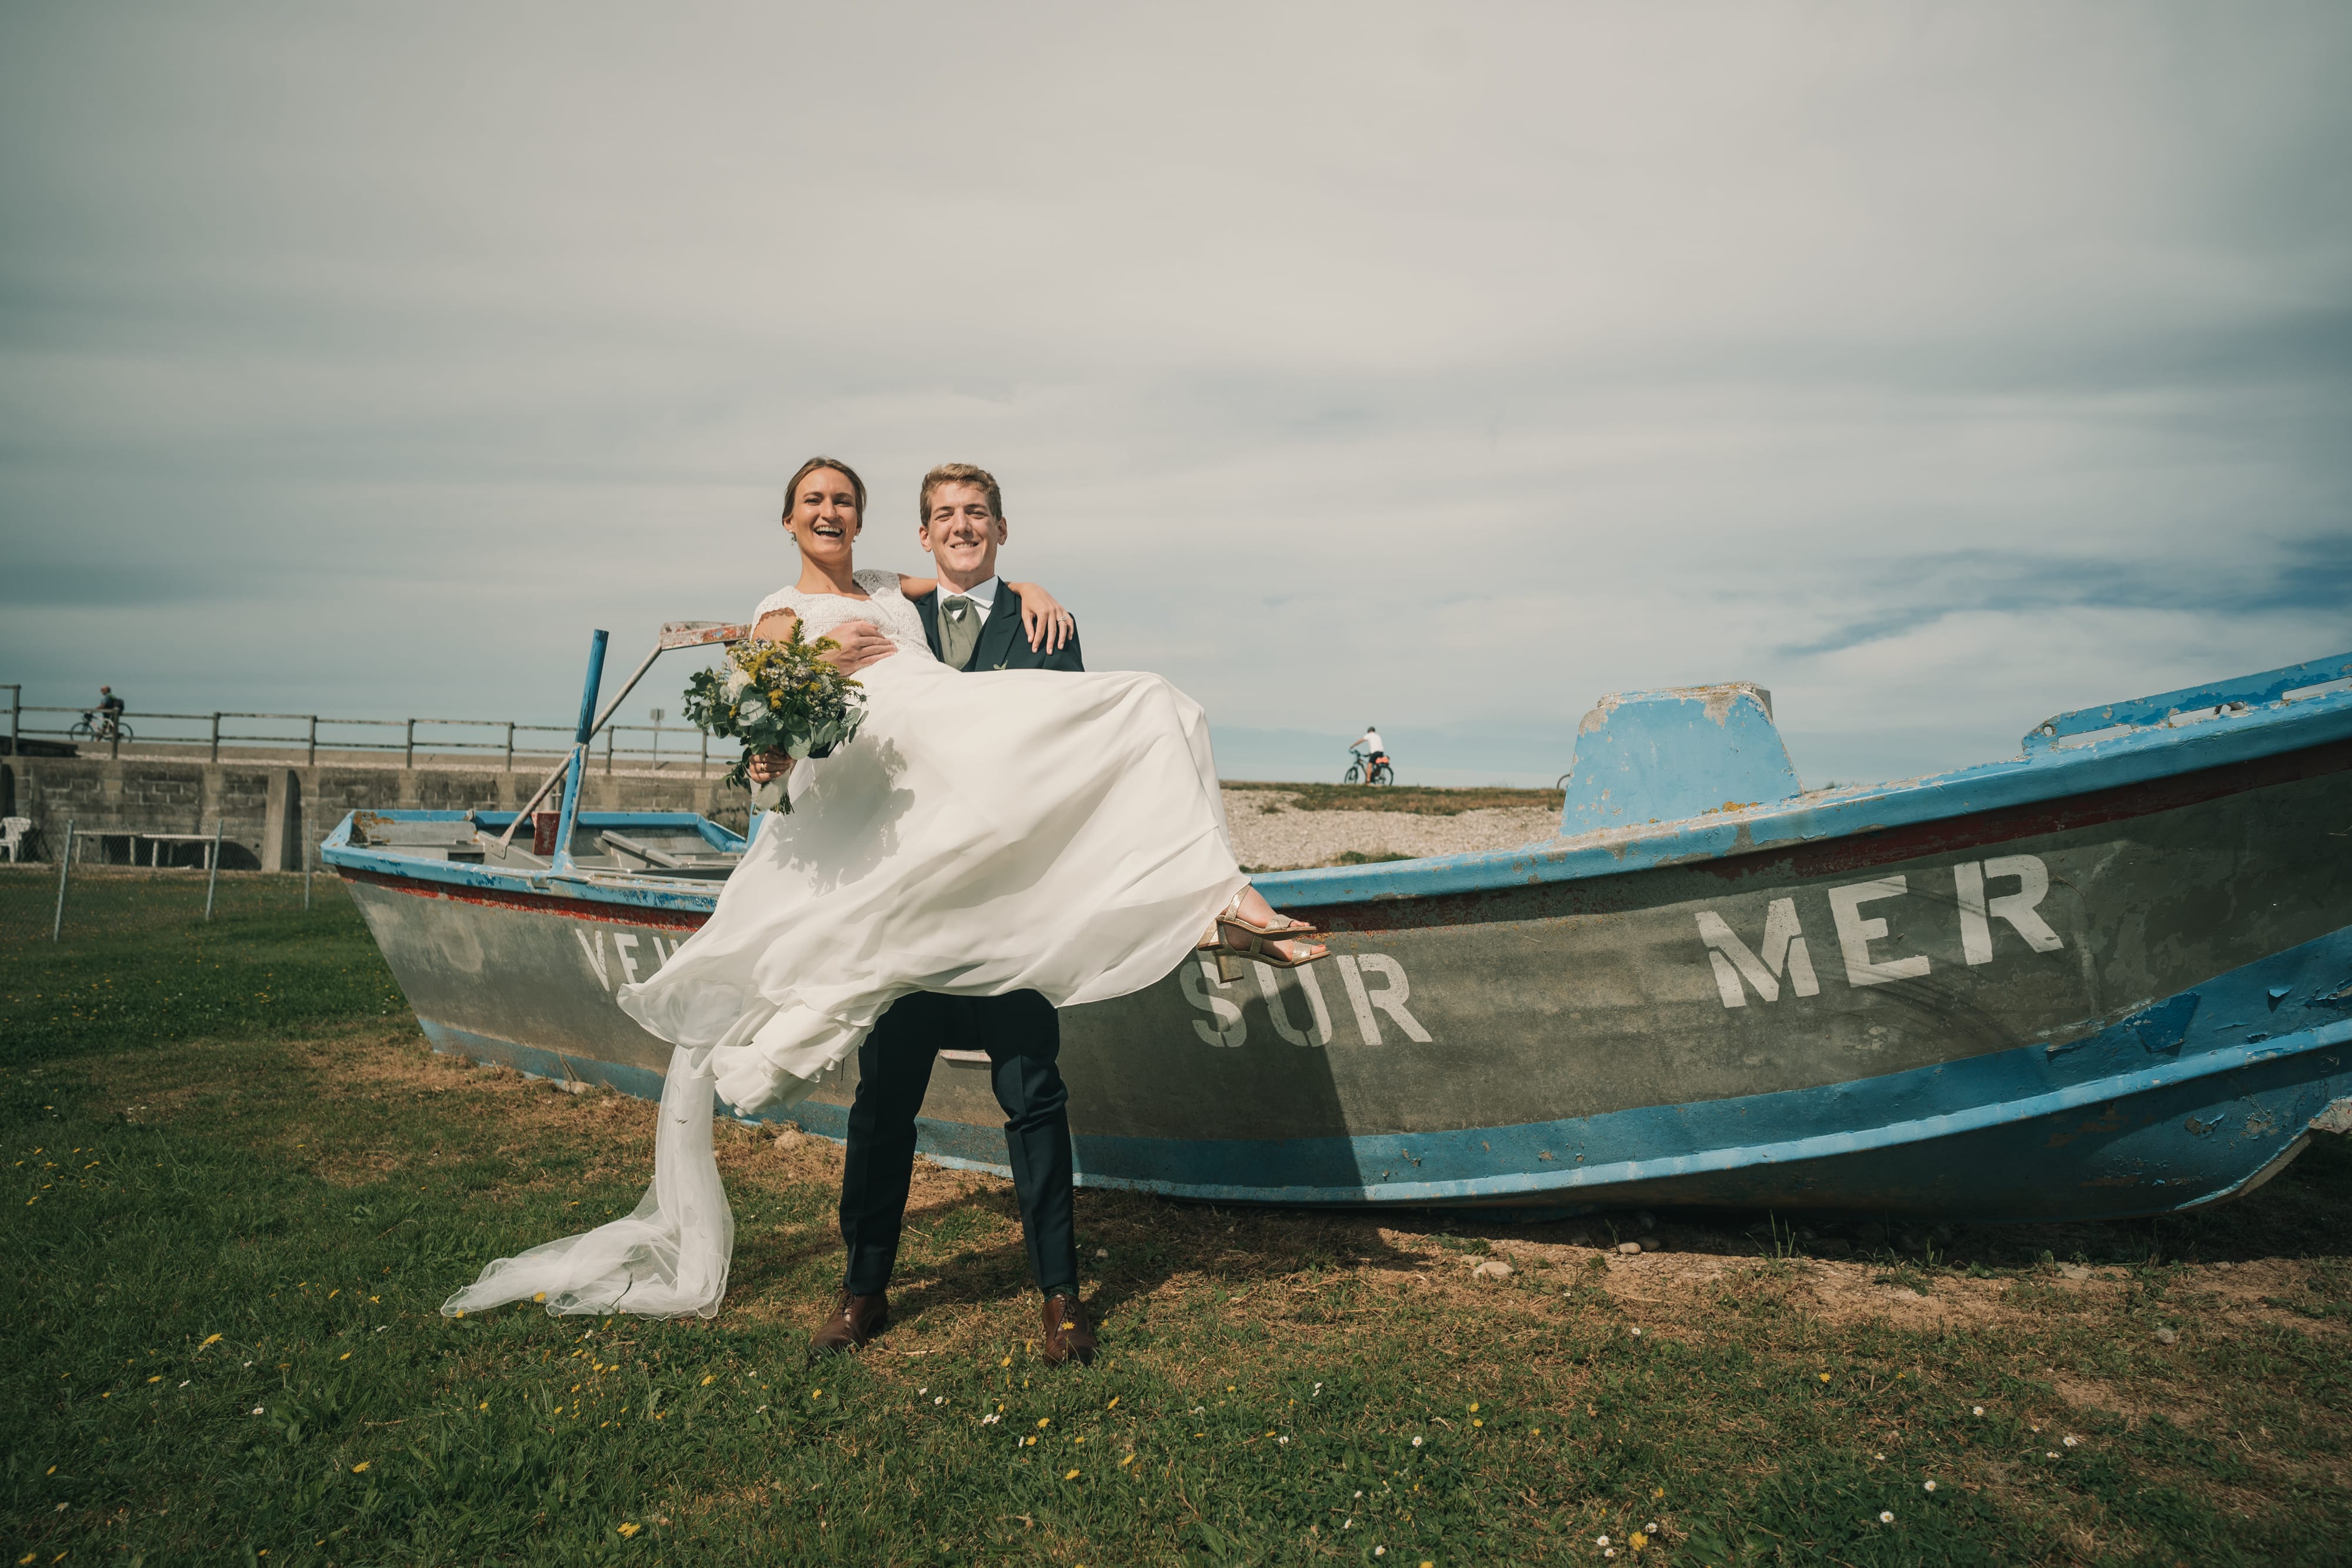 Le mariage Maëlys et Pierre- par Alain Leprévost photographe vidéaste en Normandie-385